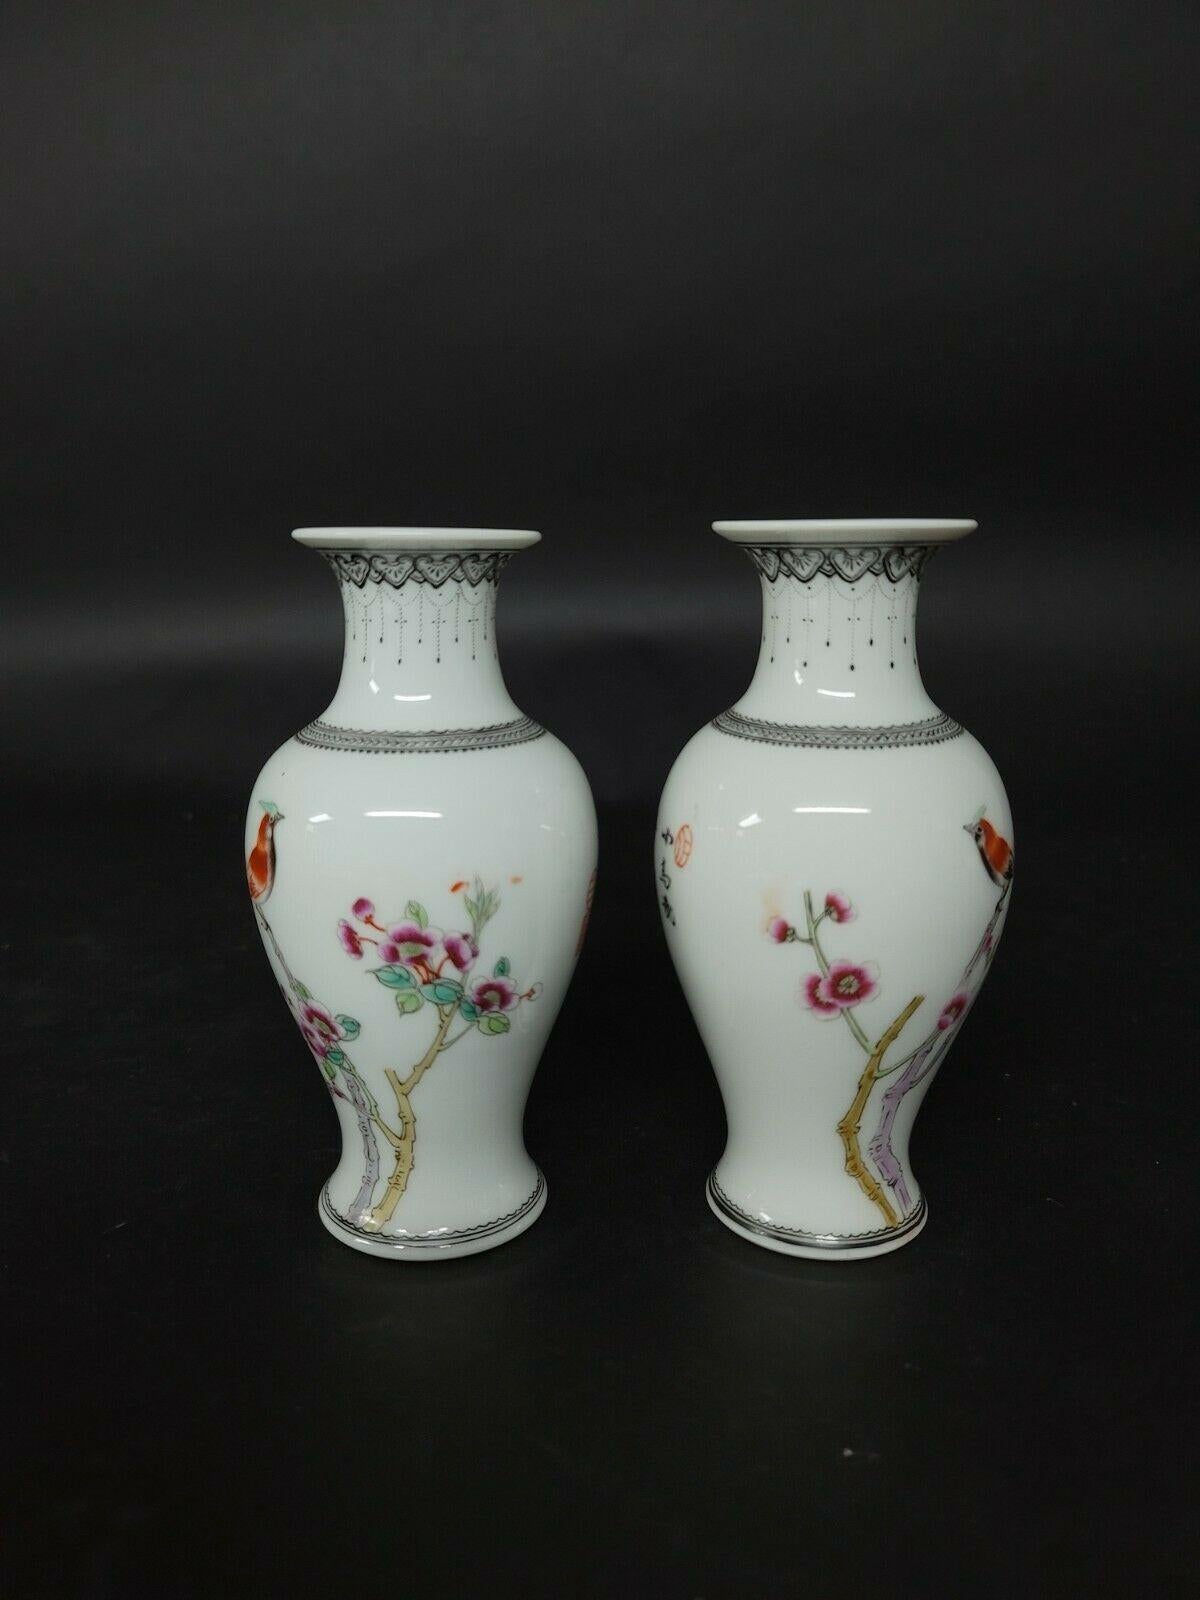 Ein kleines Paar zusammenpassender Vasen aus chinesischem Famille-Rose-Porzellan, auf denen Vögel und Blumen mit Gedichten dargestellt sind, die den schönen Frühling, einen windigen Tag mit singenden Vögeln und blühenden Blumen, das wunderbare Leben